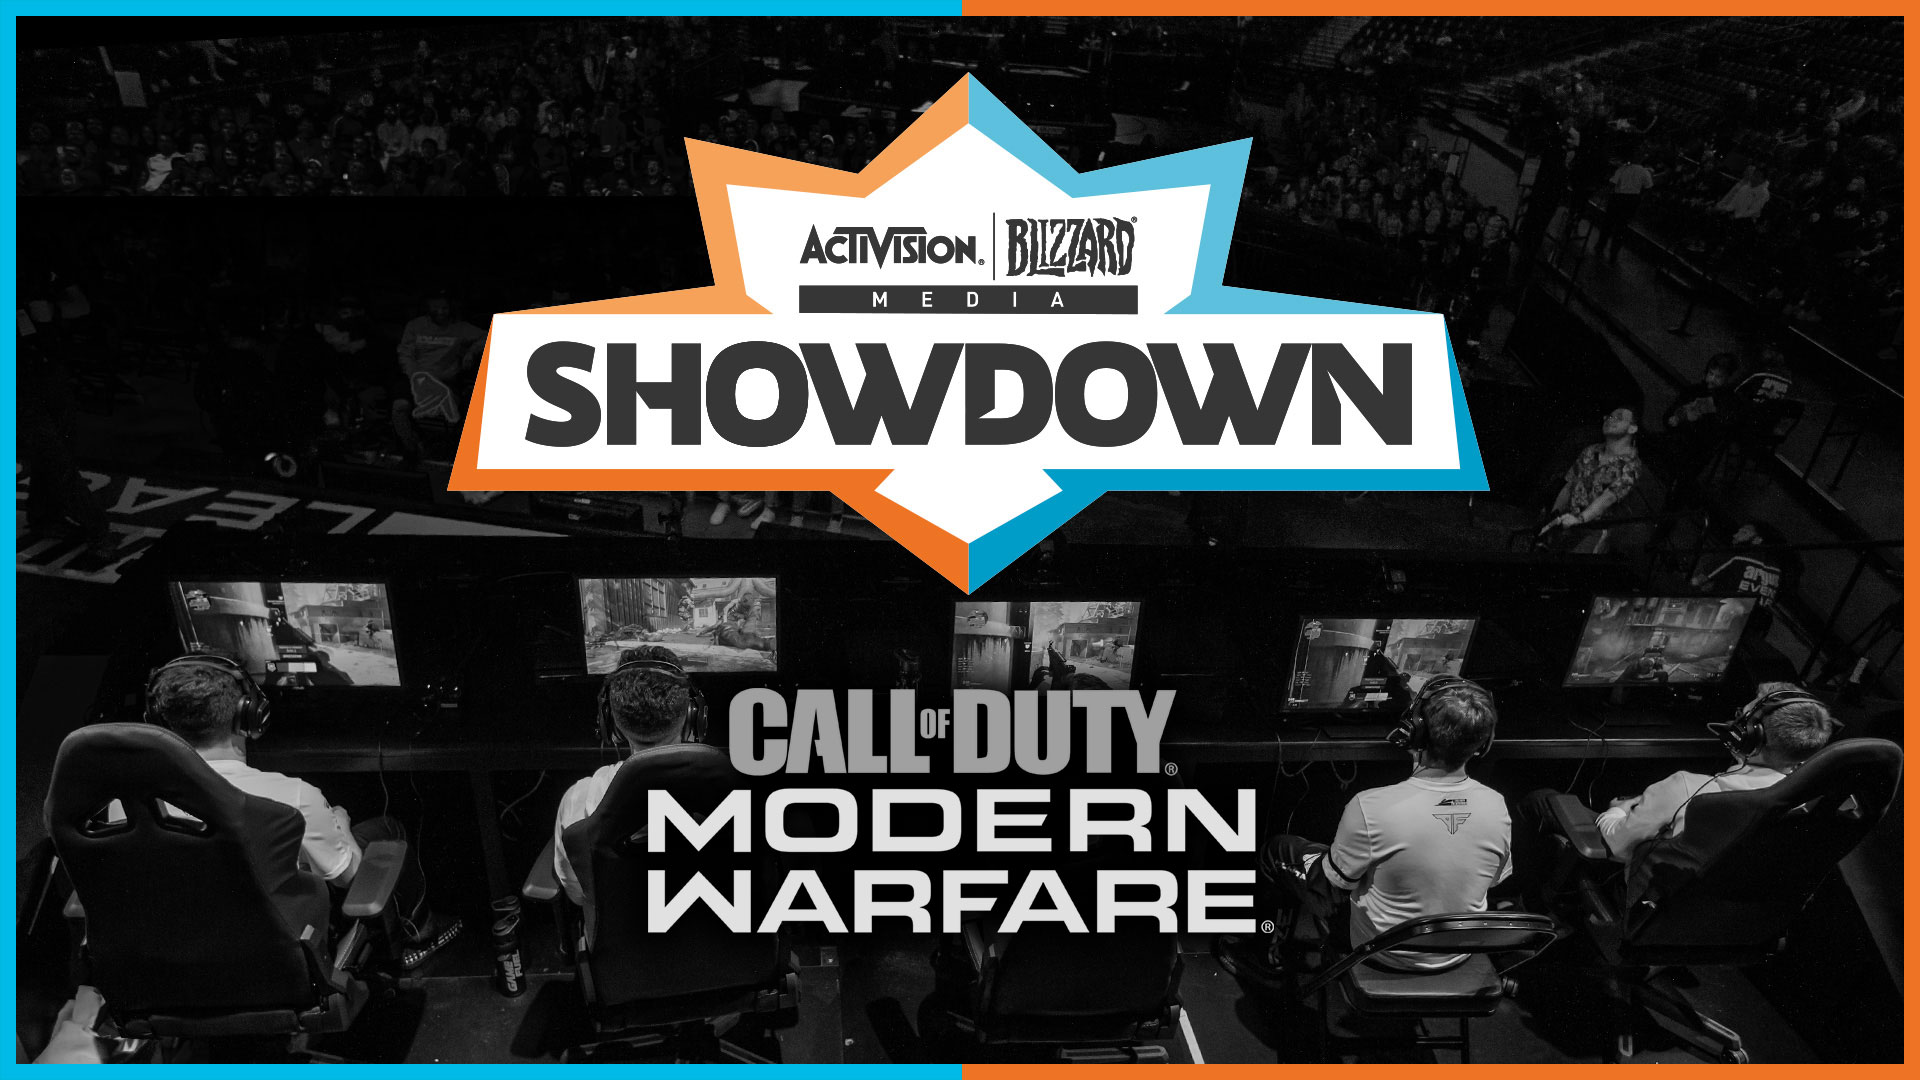 Evento esport Activision Blizzard Media Showdown Call of Duty